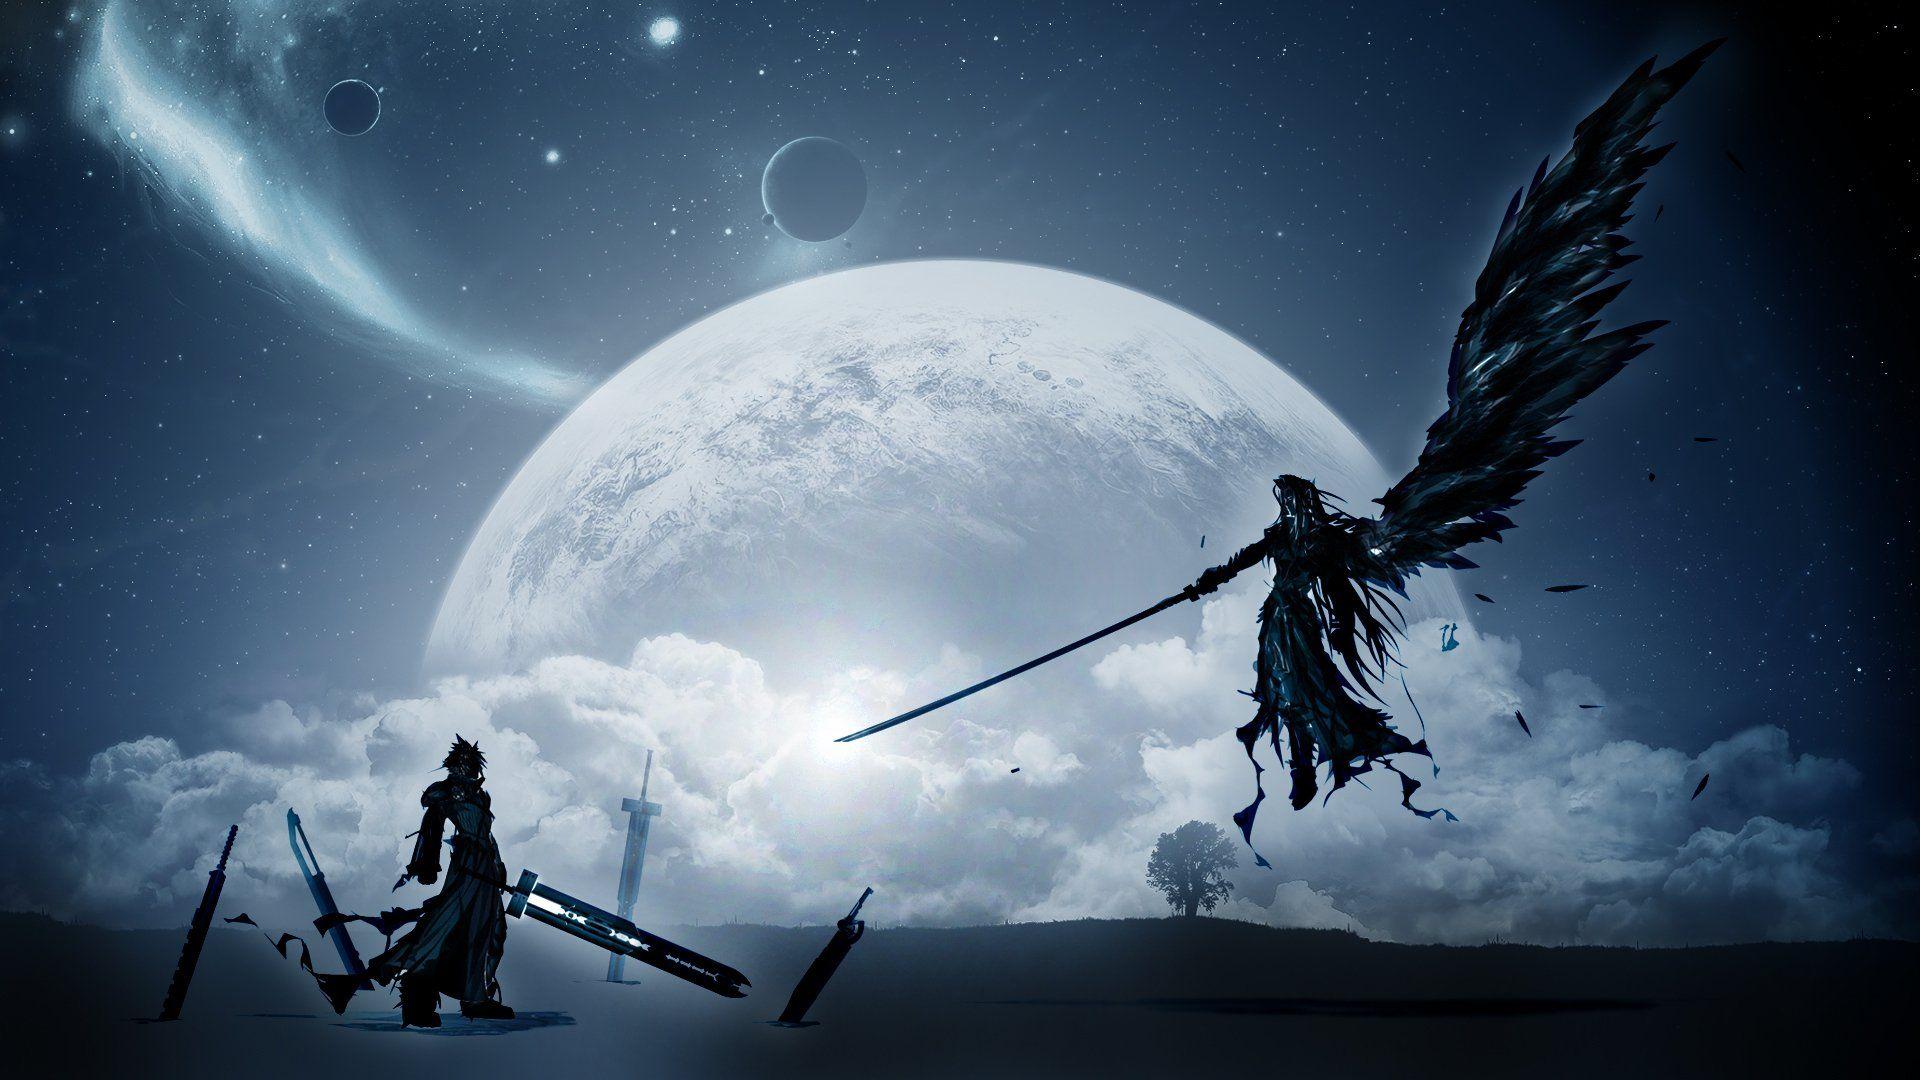 Final Fantasy VII: Advent Children HD Wallpaper. Background